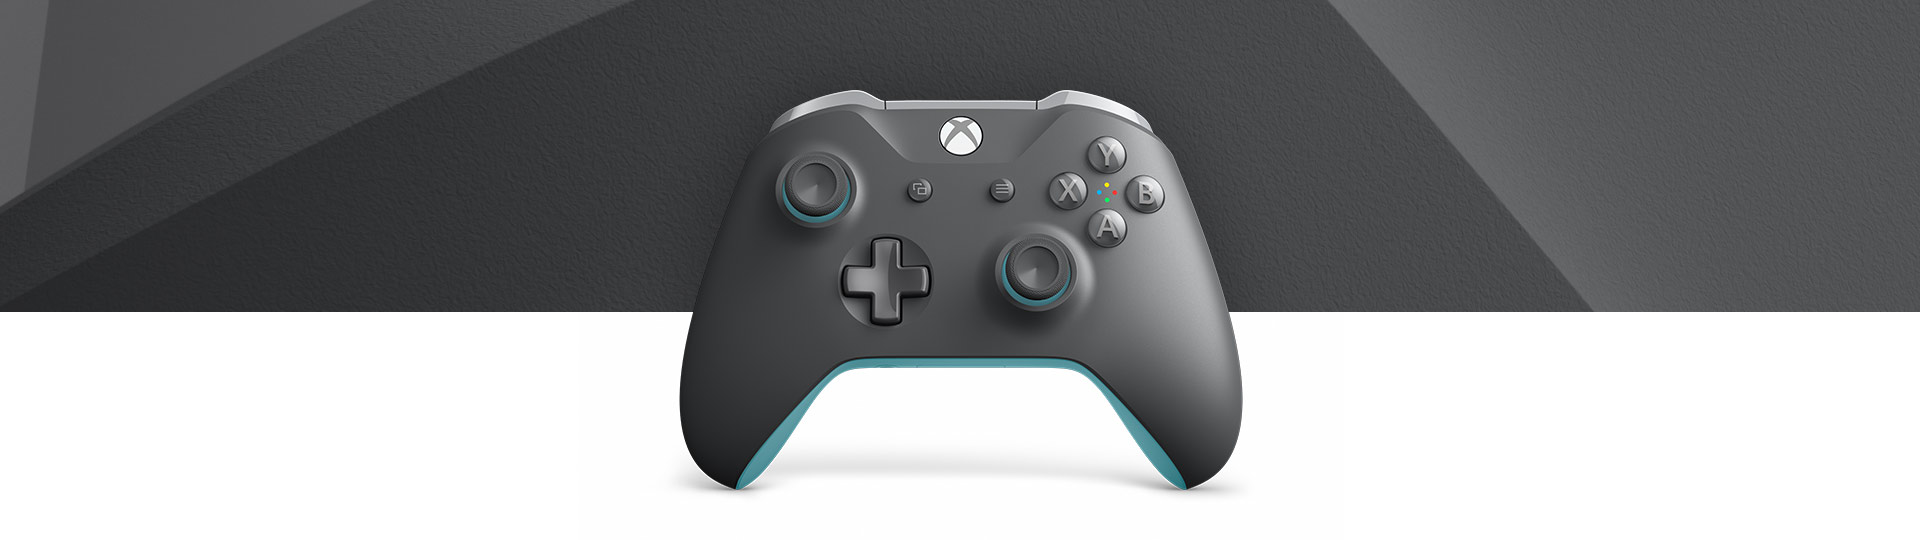 藍灰色 Xbox 無線控制器的正面圖